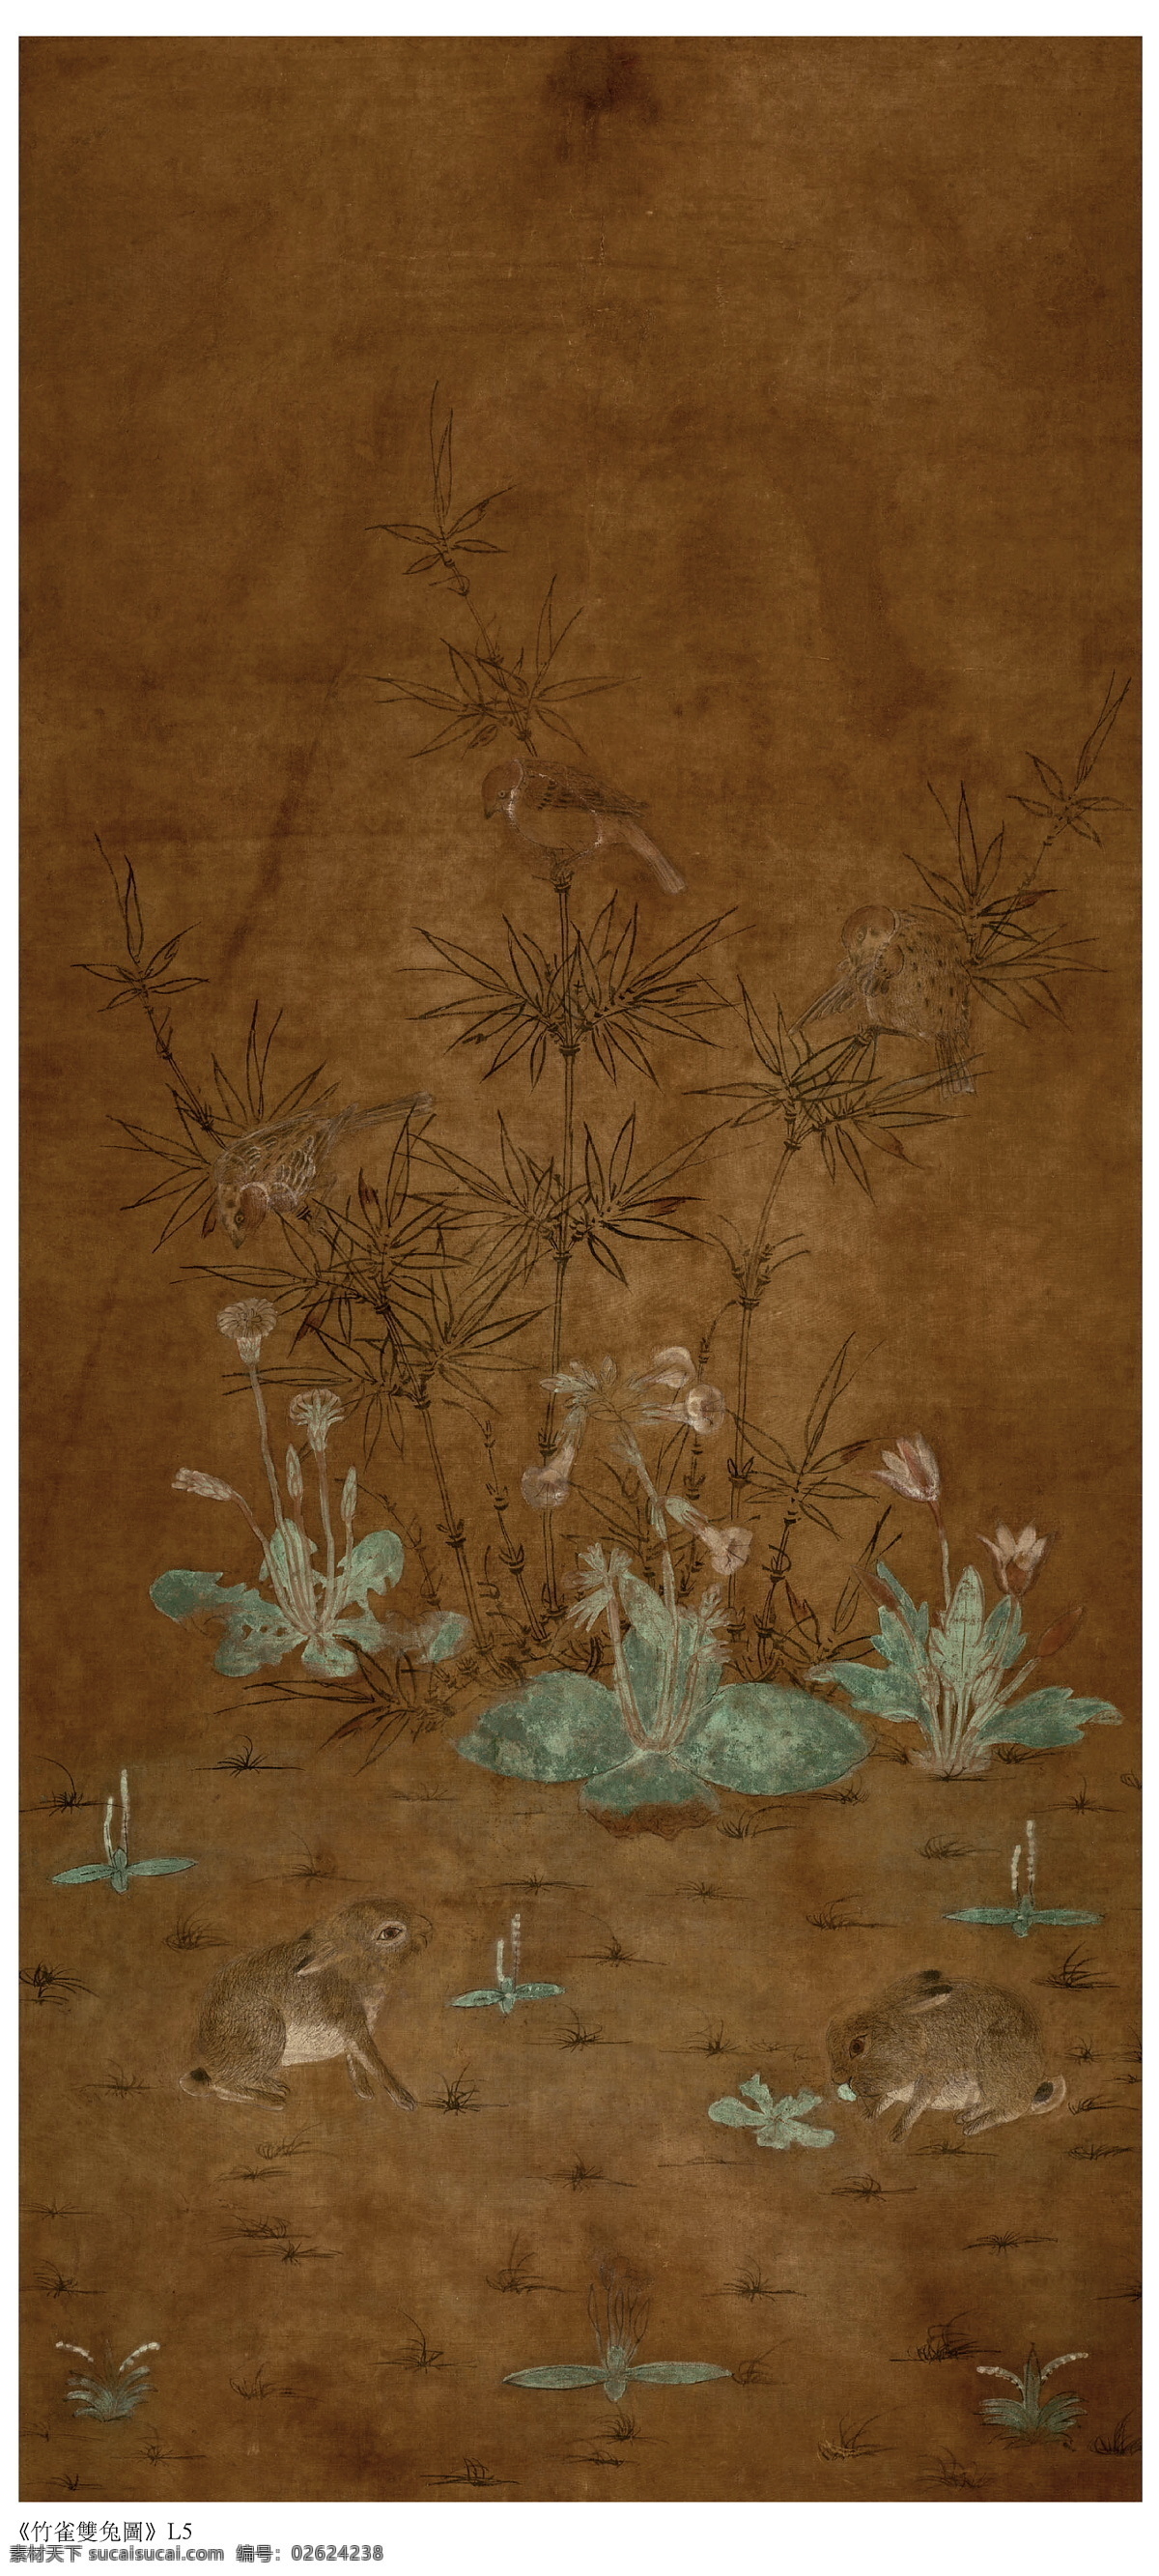 竹雀双兔图 辽 佚名 绘画 中国画 古画 艺术 绘画书法 文化艺术